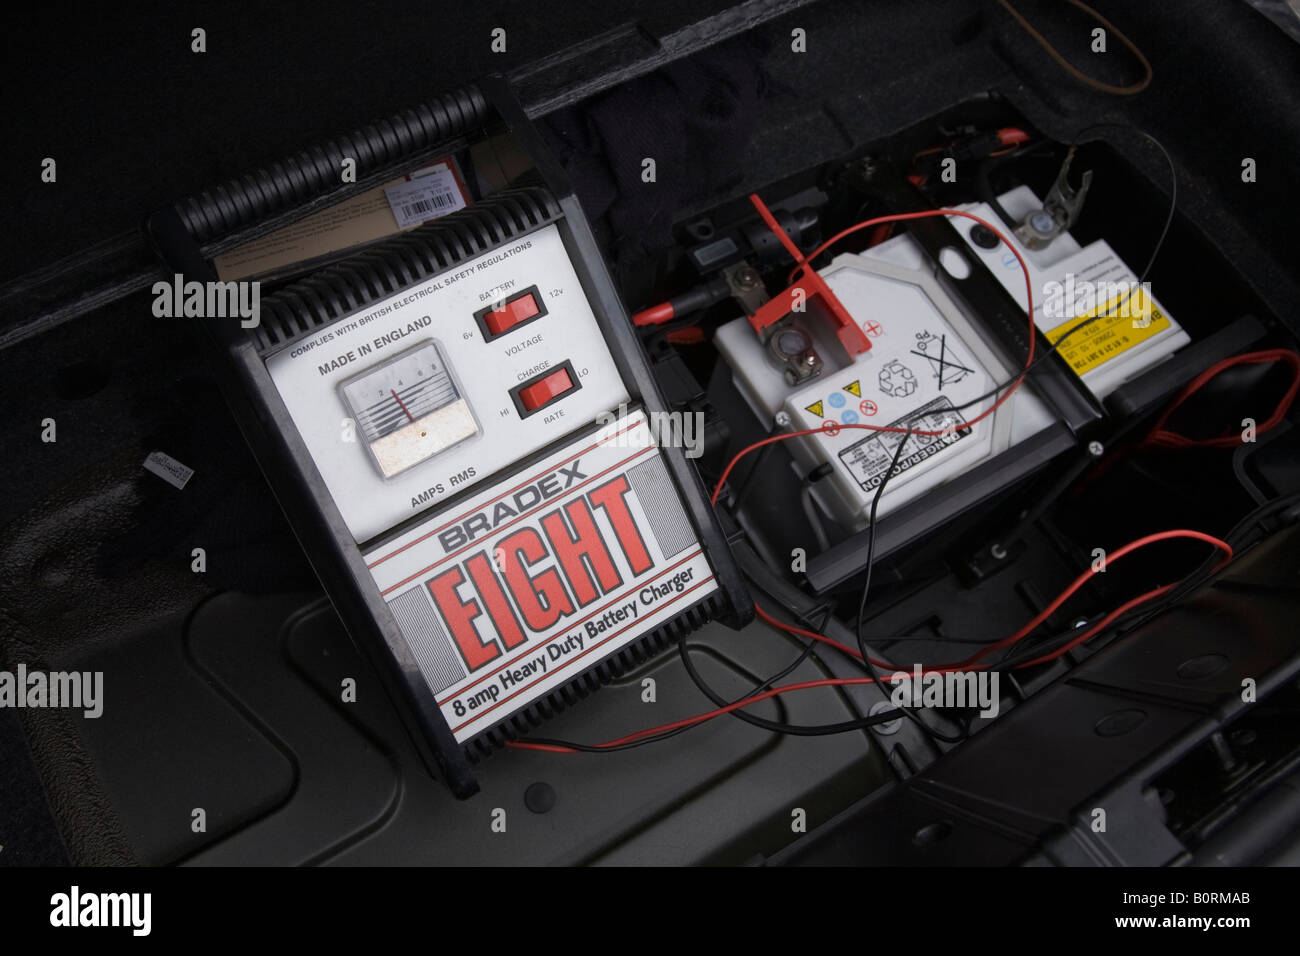 Auto Batterieladegerät lädt eine flache 12v Autobatterie in einem BMW  Z4-Auto Stockfotografie - Alamy